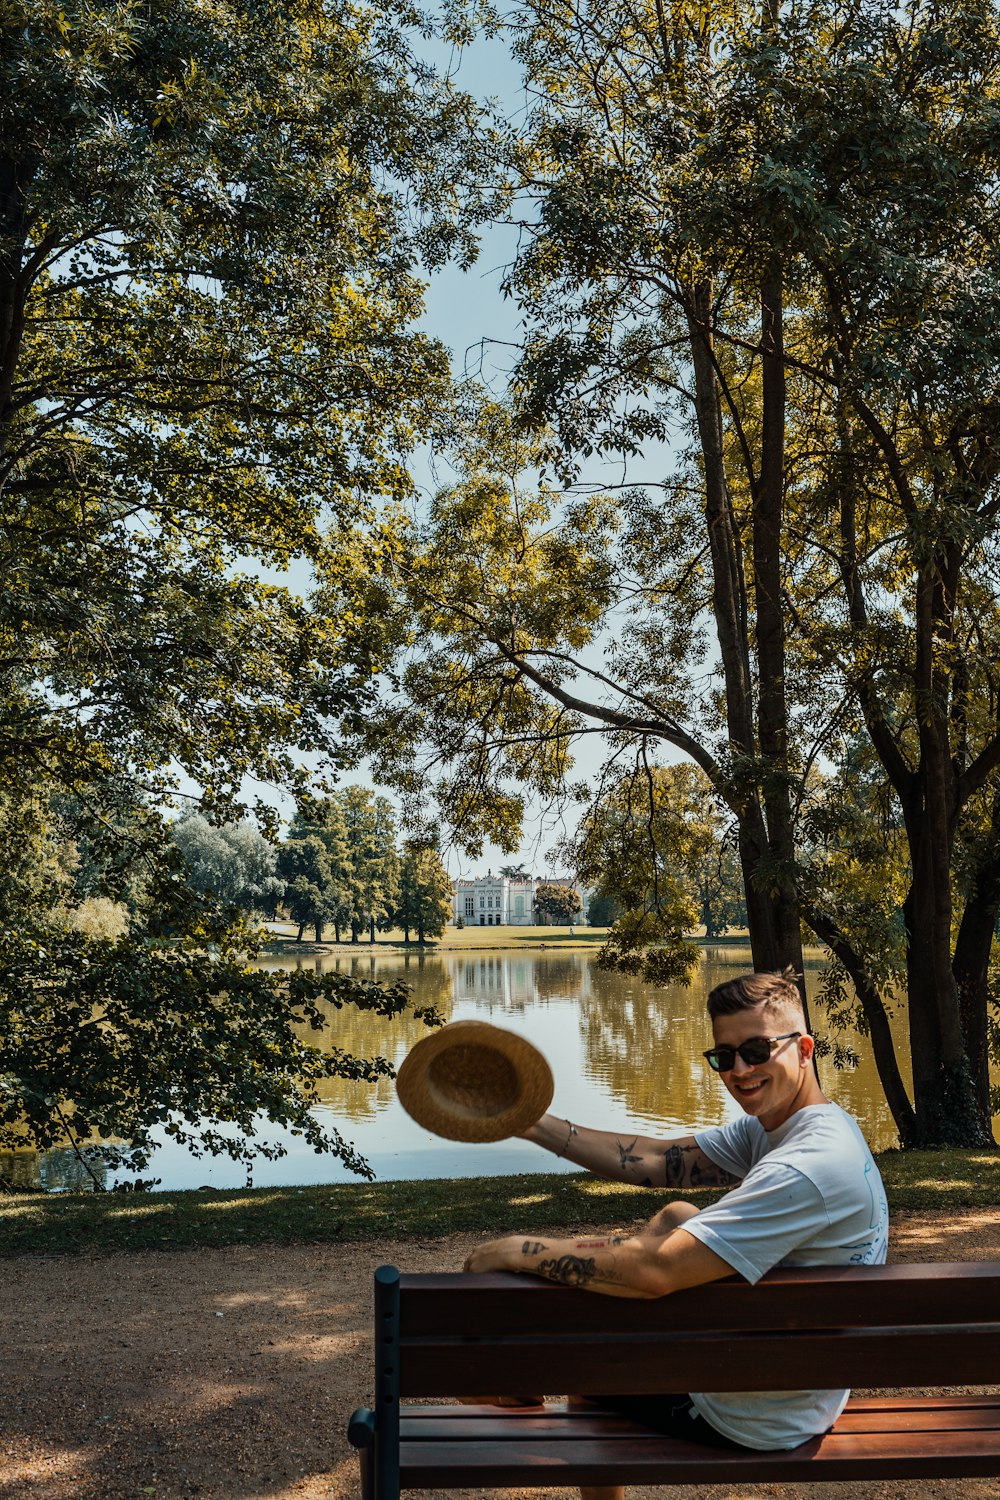 Un hombre sentado en un banco con un frisbee en la mano